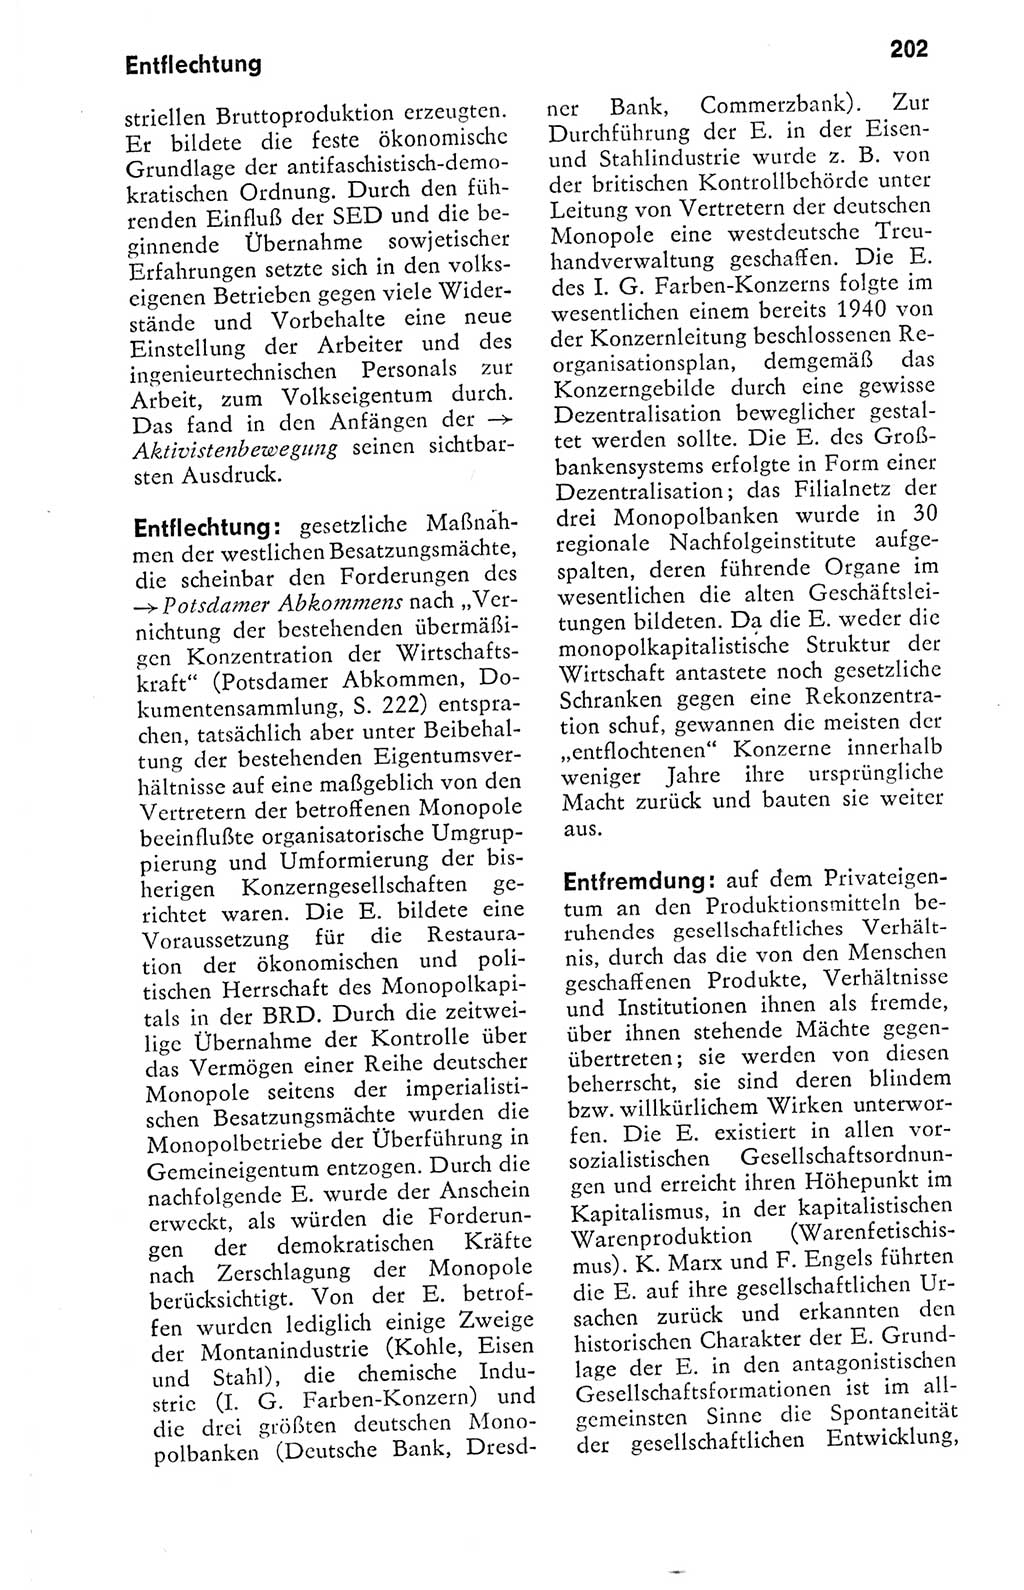 Kleines politisches Wörterbuch [Deutsche Demokratische Republik (DDR)] 1978, Seite 202 (Kl. pol. Wb. DDR 1978, S. 202)